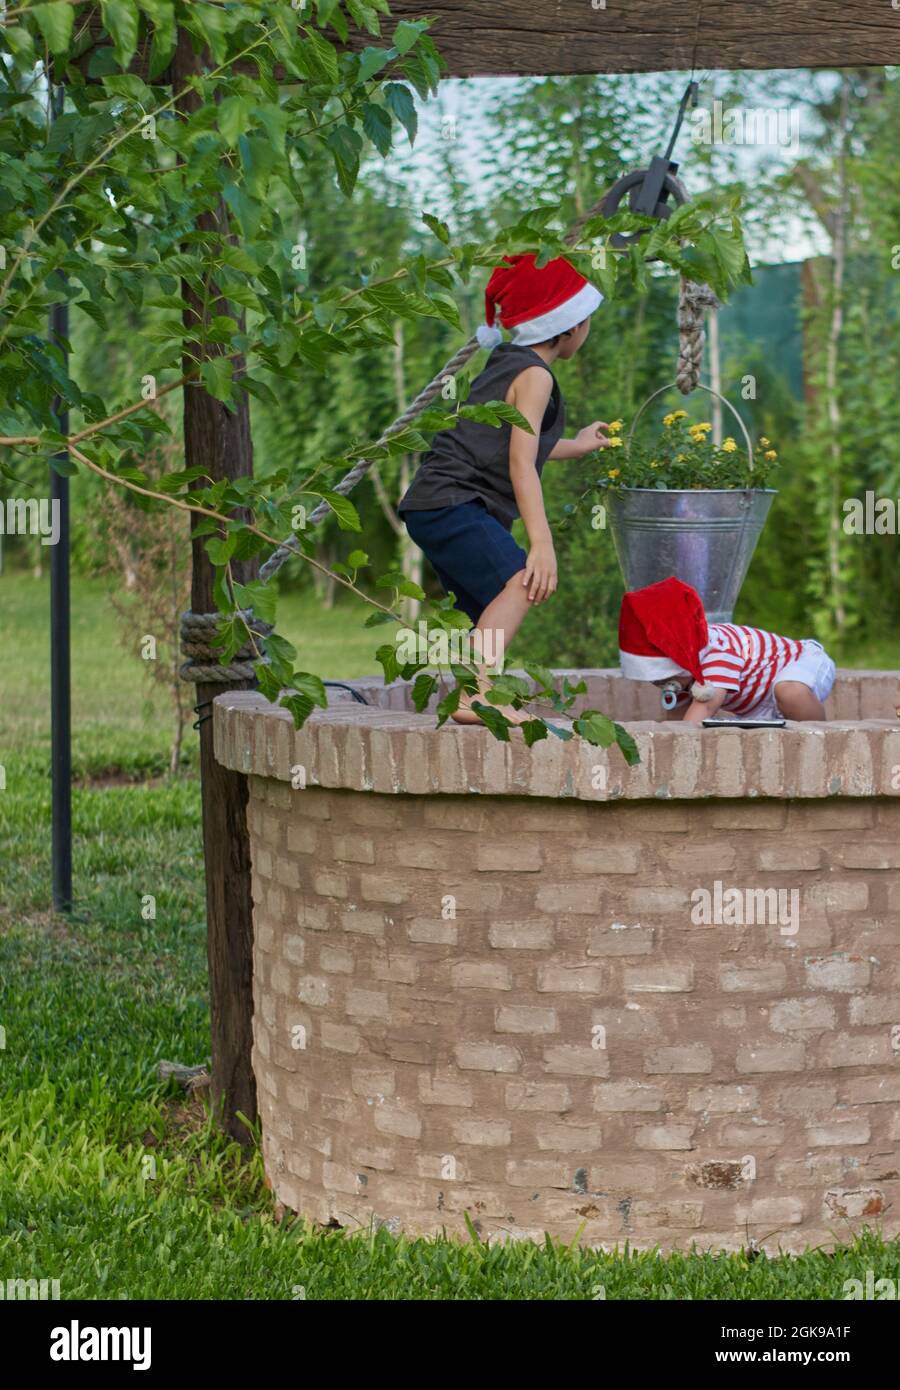 Zwei Kinder mit Weihnachtsmannmützen spielen auf einem geschlossenen Ziegelwasserbrunnen zur Weihnachtszeit. Grüne Vegetation im Hintergrund. Sommer. Vertikal Stockfoto